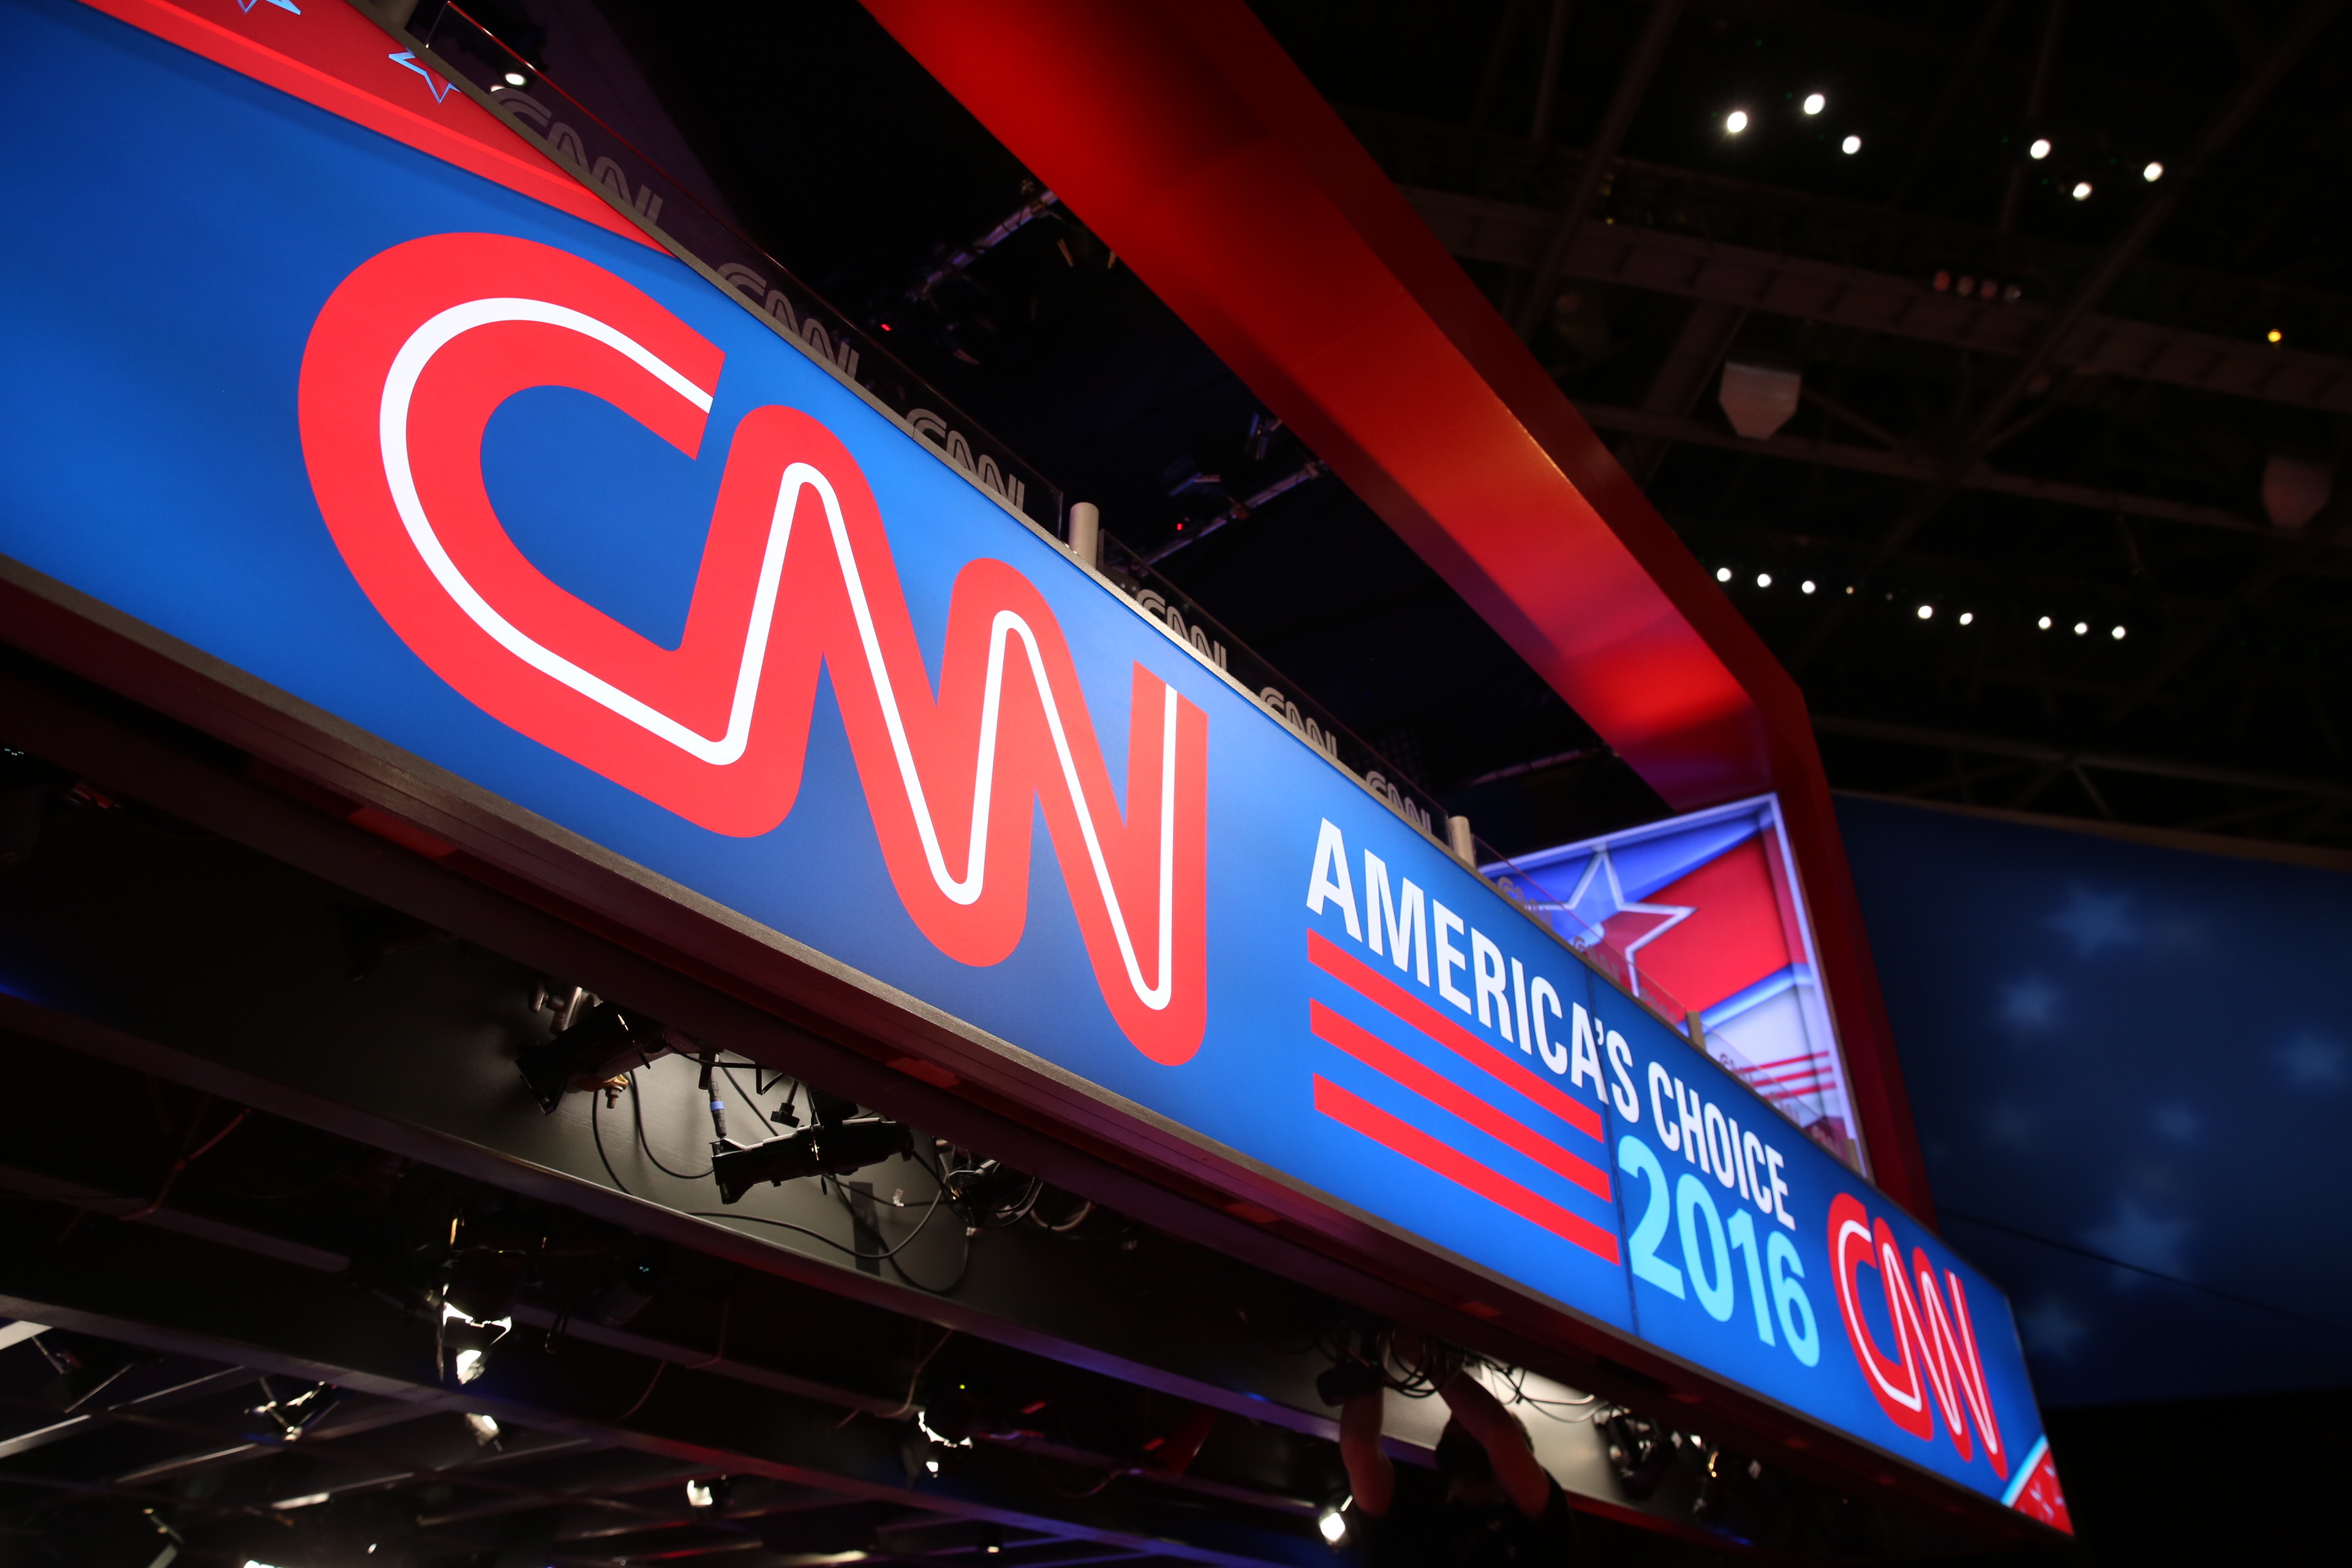 Ամերիկացի լրագրողը հայտնել է, որ կոմպրոմատ ունի CNN-ի դեմ